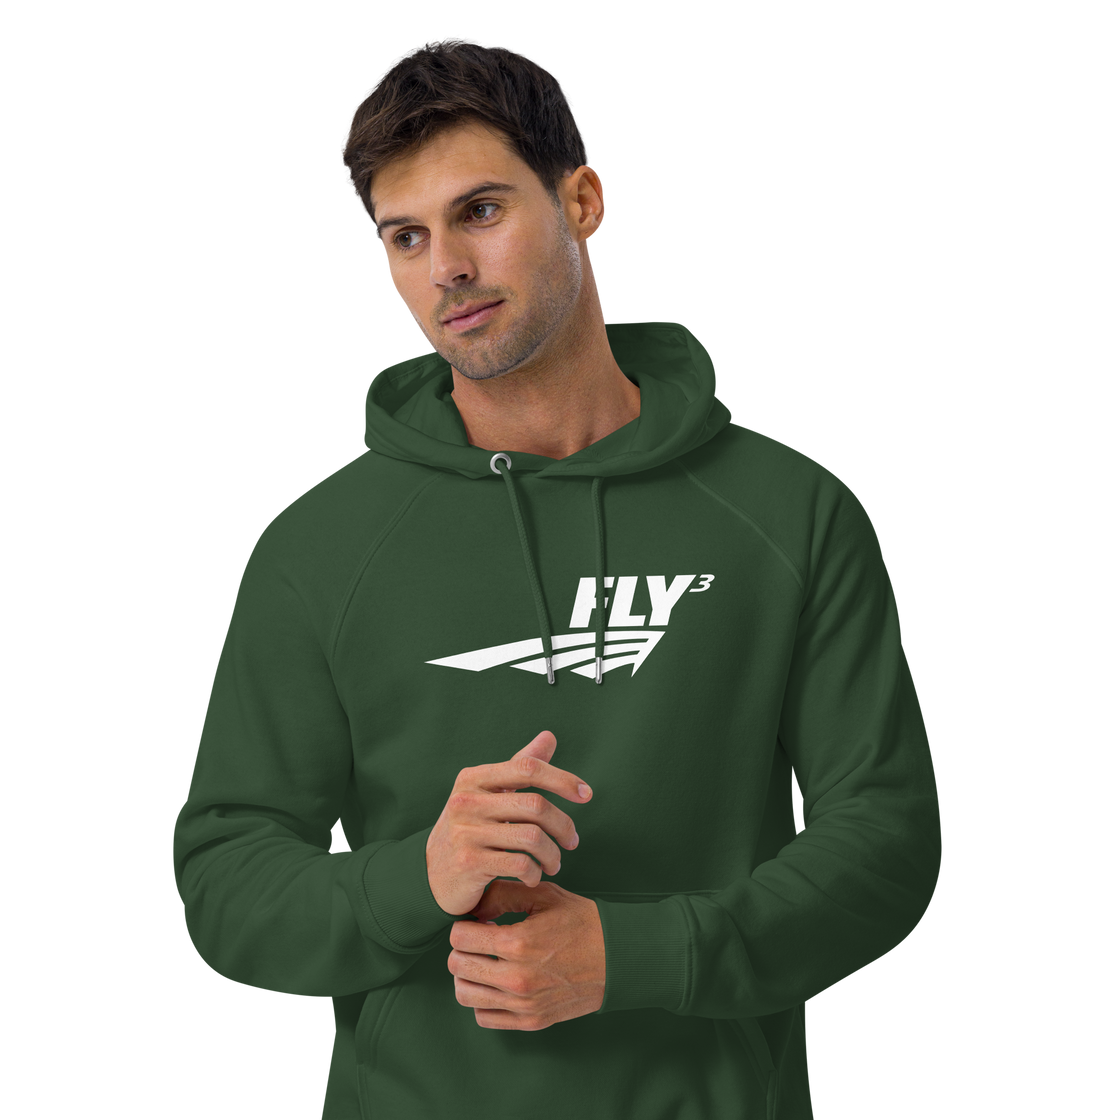 FLY³ Unisex eco raglan hoodie | Flycube